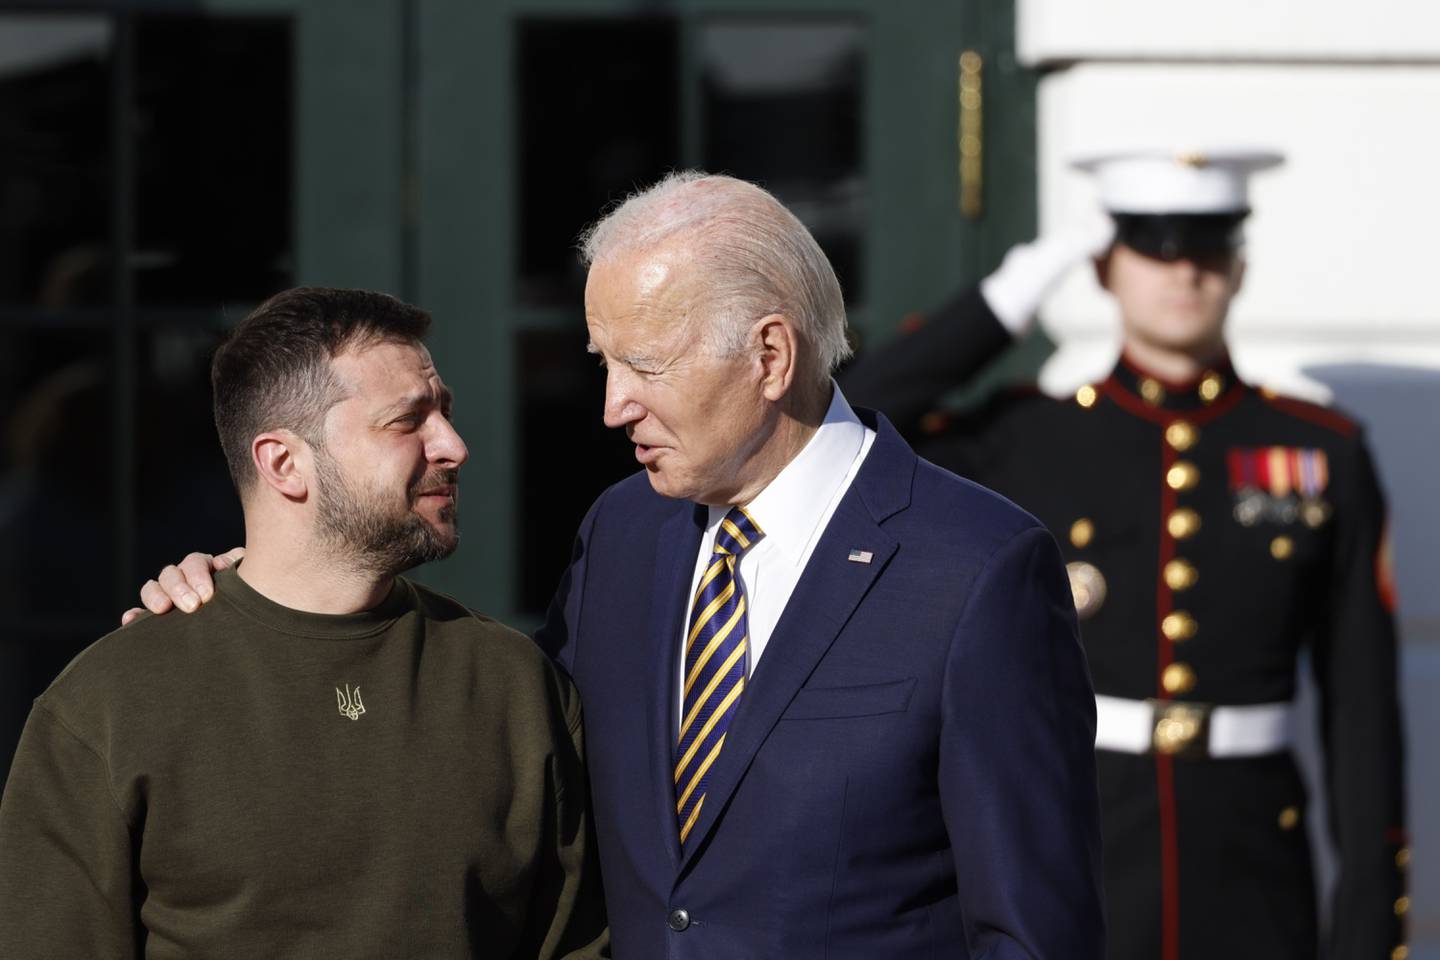 El presidente de EE. UU., Joe Biden, saluda a Volodymyr Zelenskiy, presidente de Ucrania, afuera de la Casa Blanca en Washington, DC, EE.UU., el miércoles 21 de diciembre de 2022.dfd